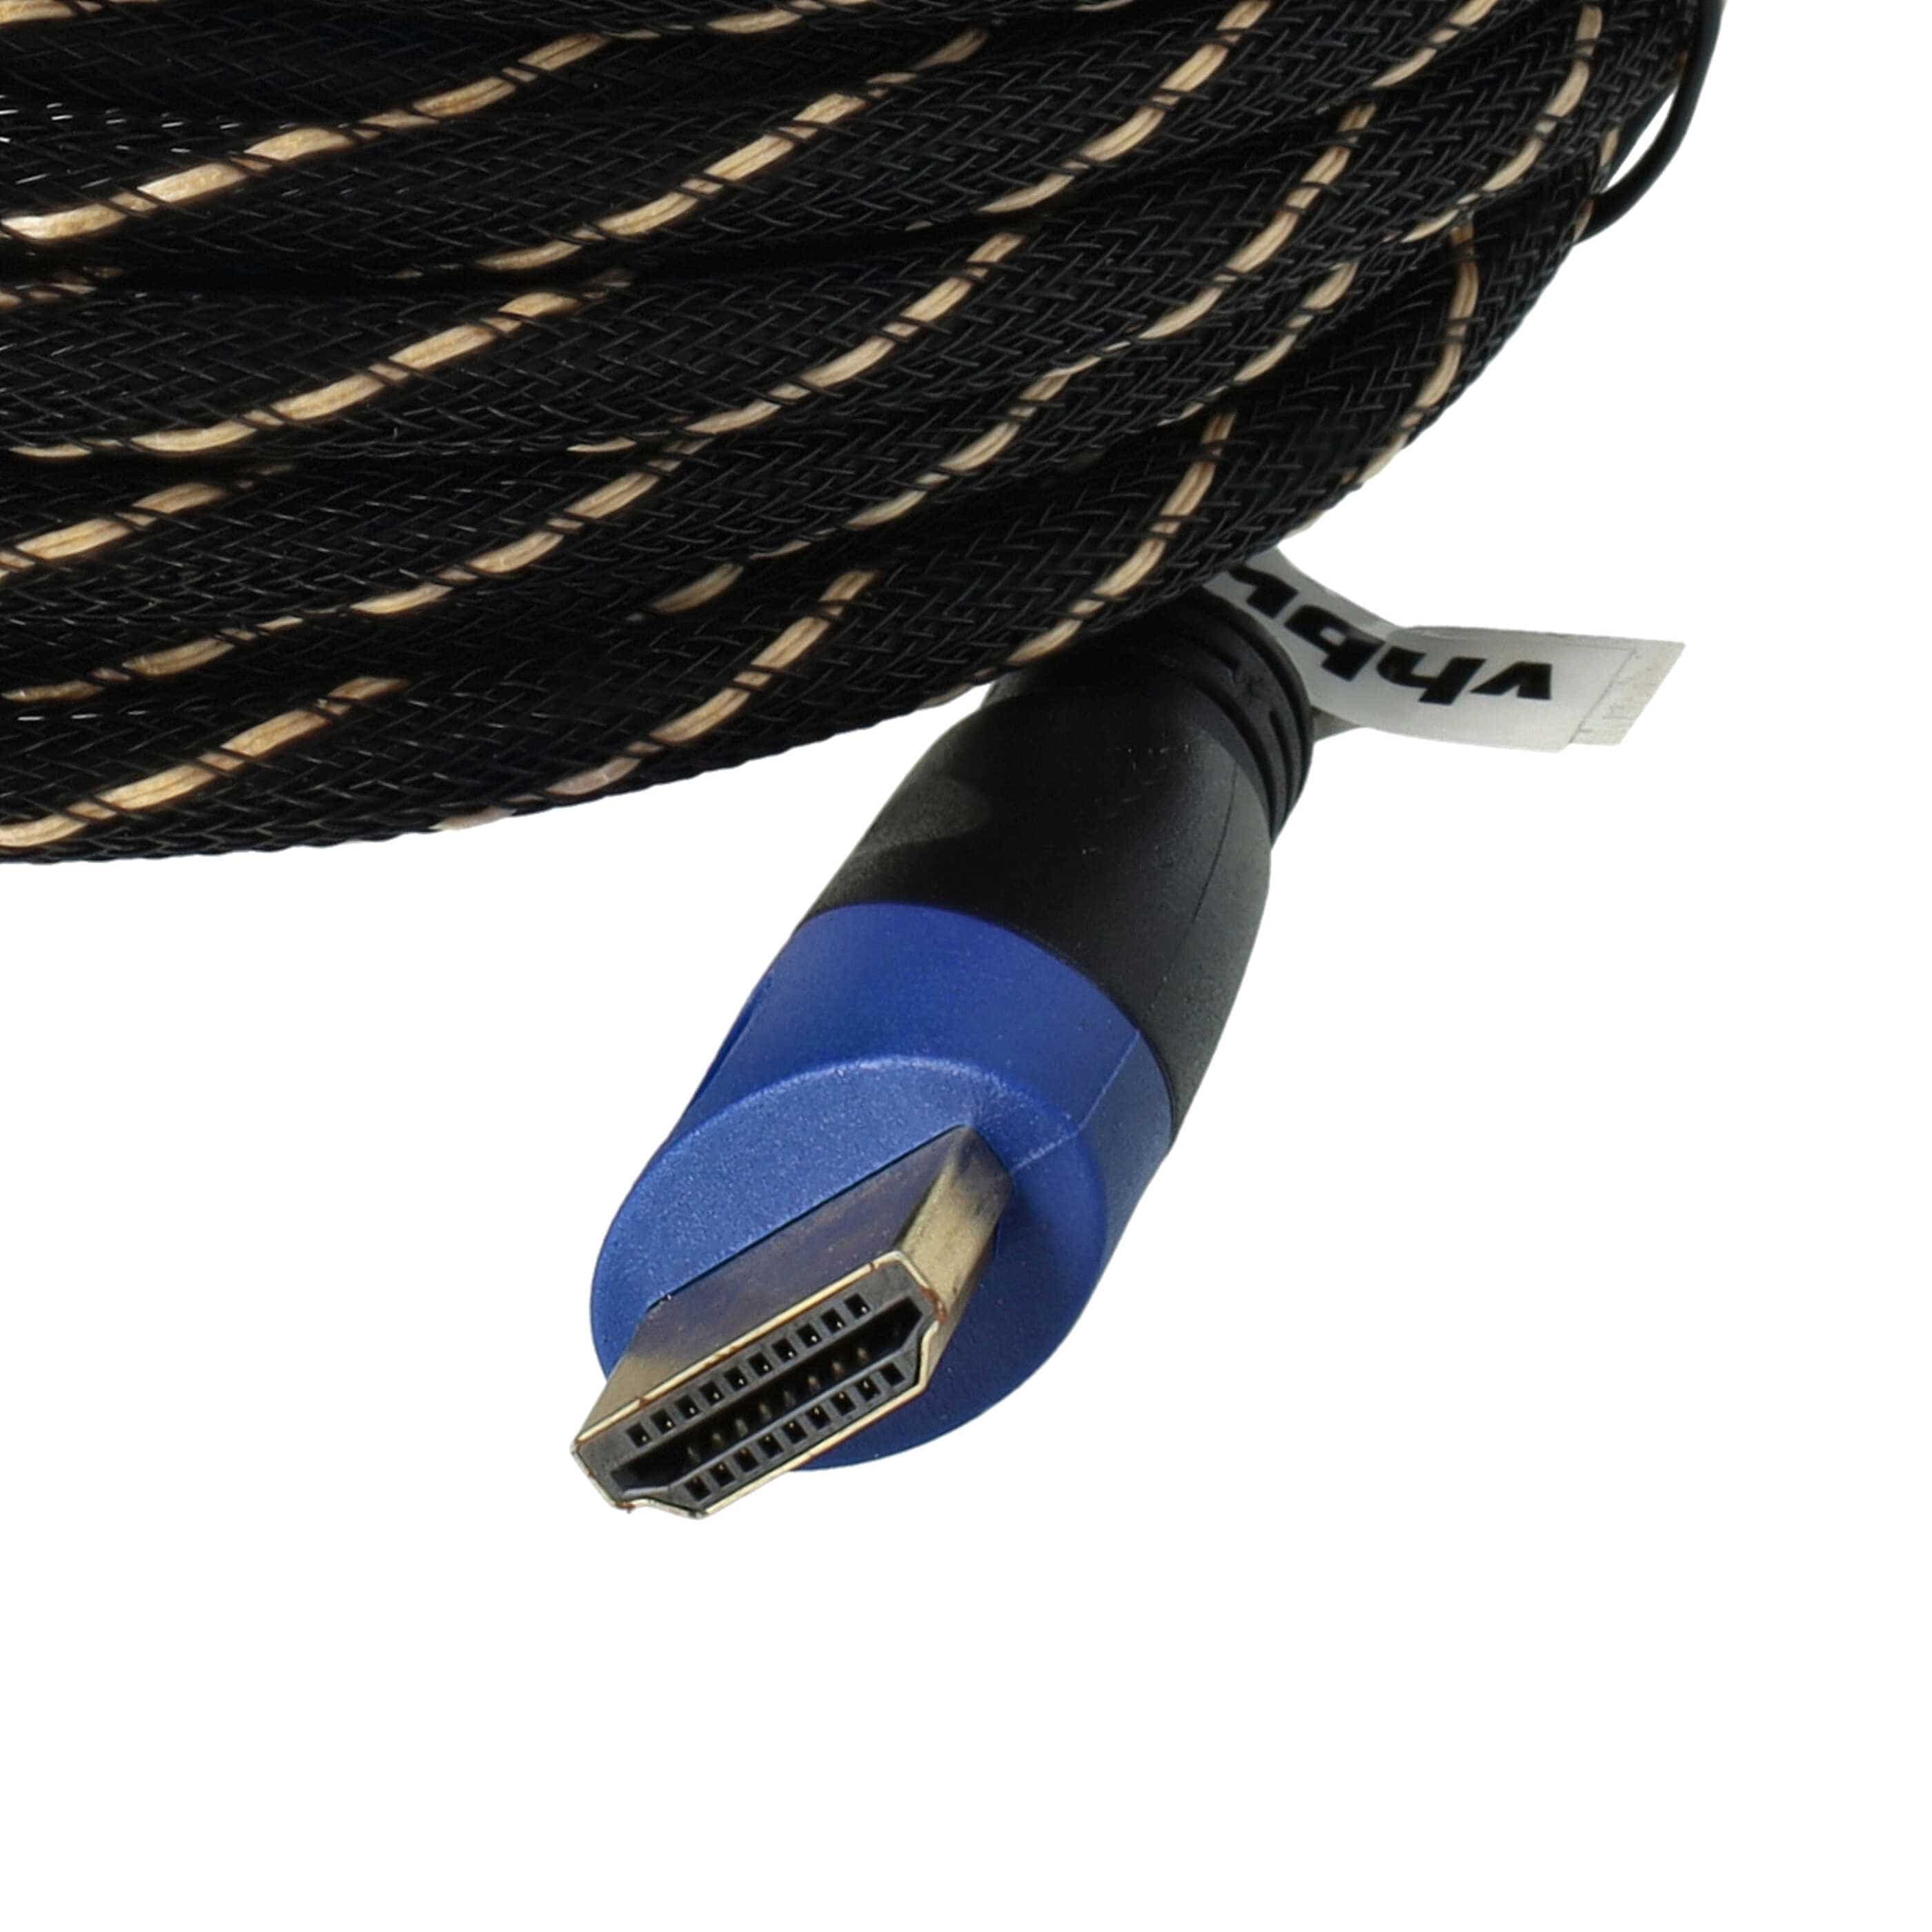 Câble HDMI V1.4 haut débit tressé 10m pour tablette, téléviseur, playstation, ordinateur, moniteur, lecteur DV